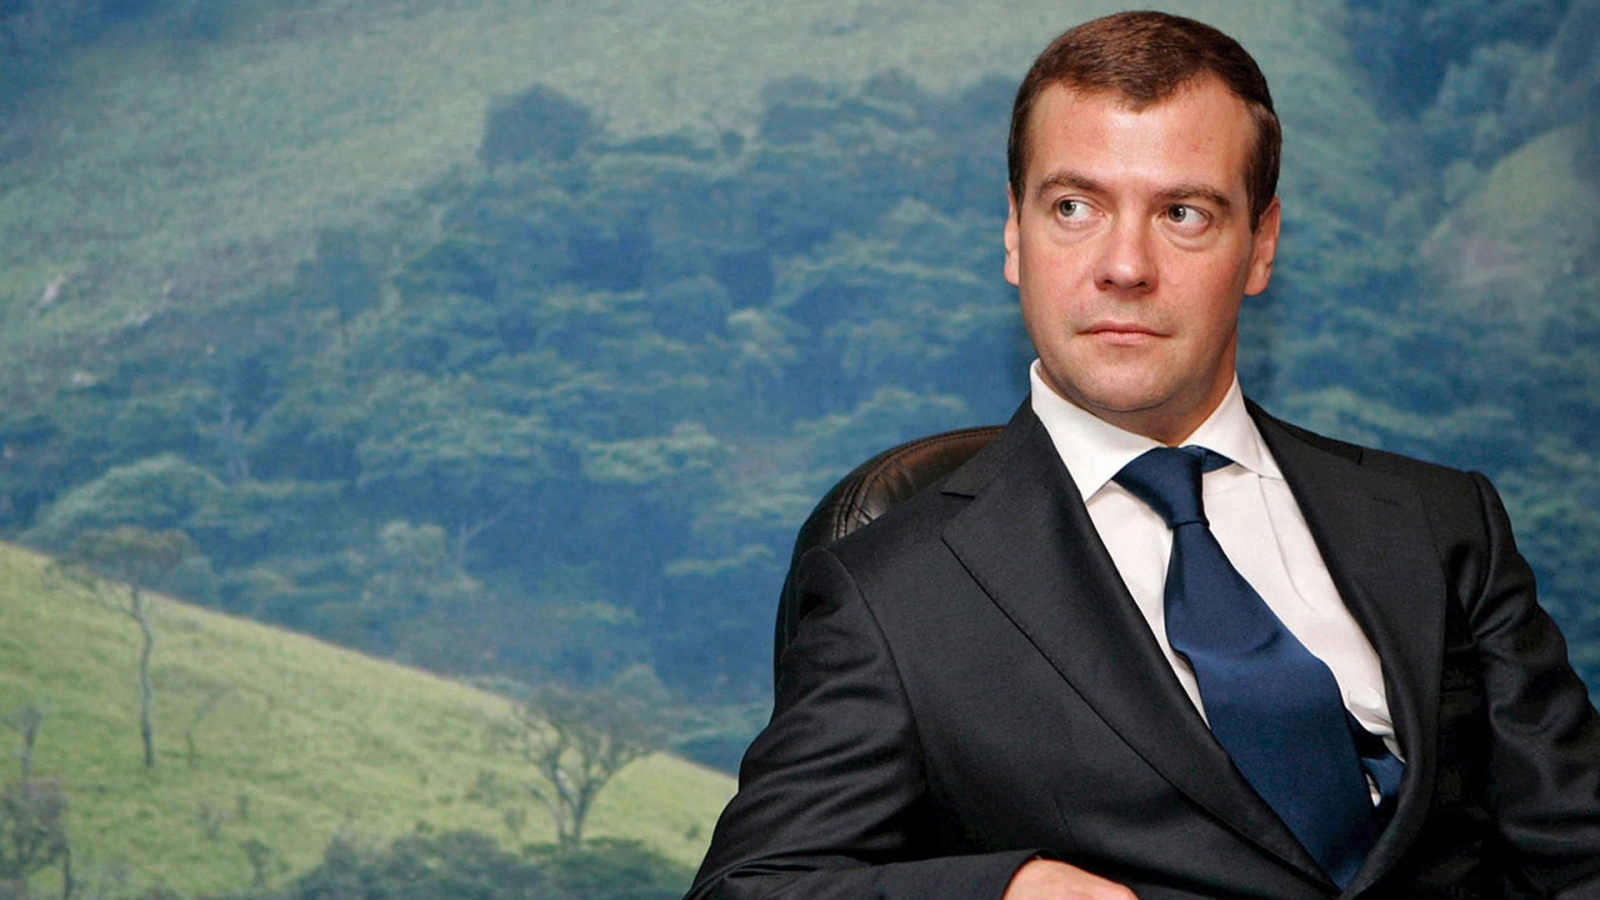 Dmitry Medvedev for 1600 x 900 HDTV resolution